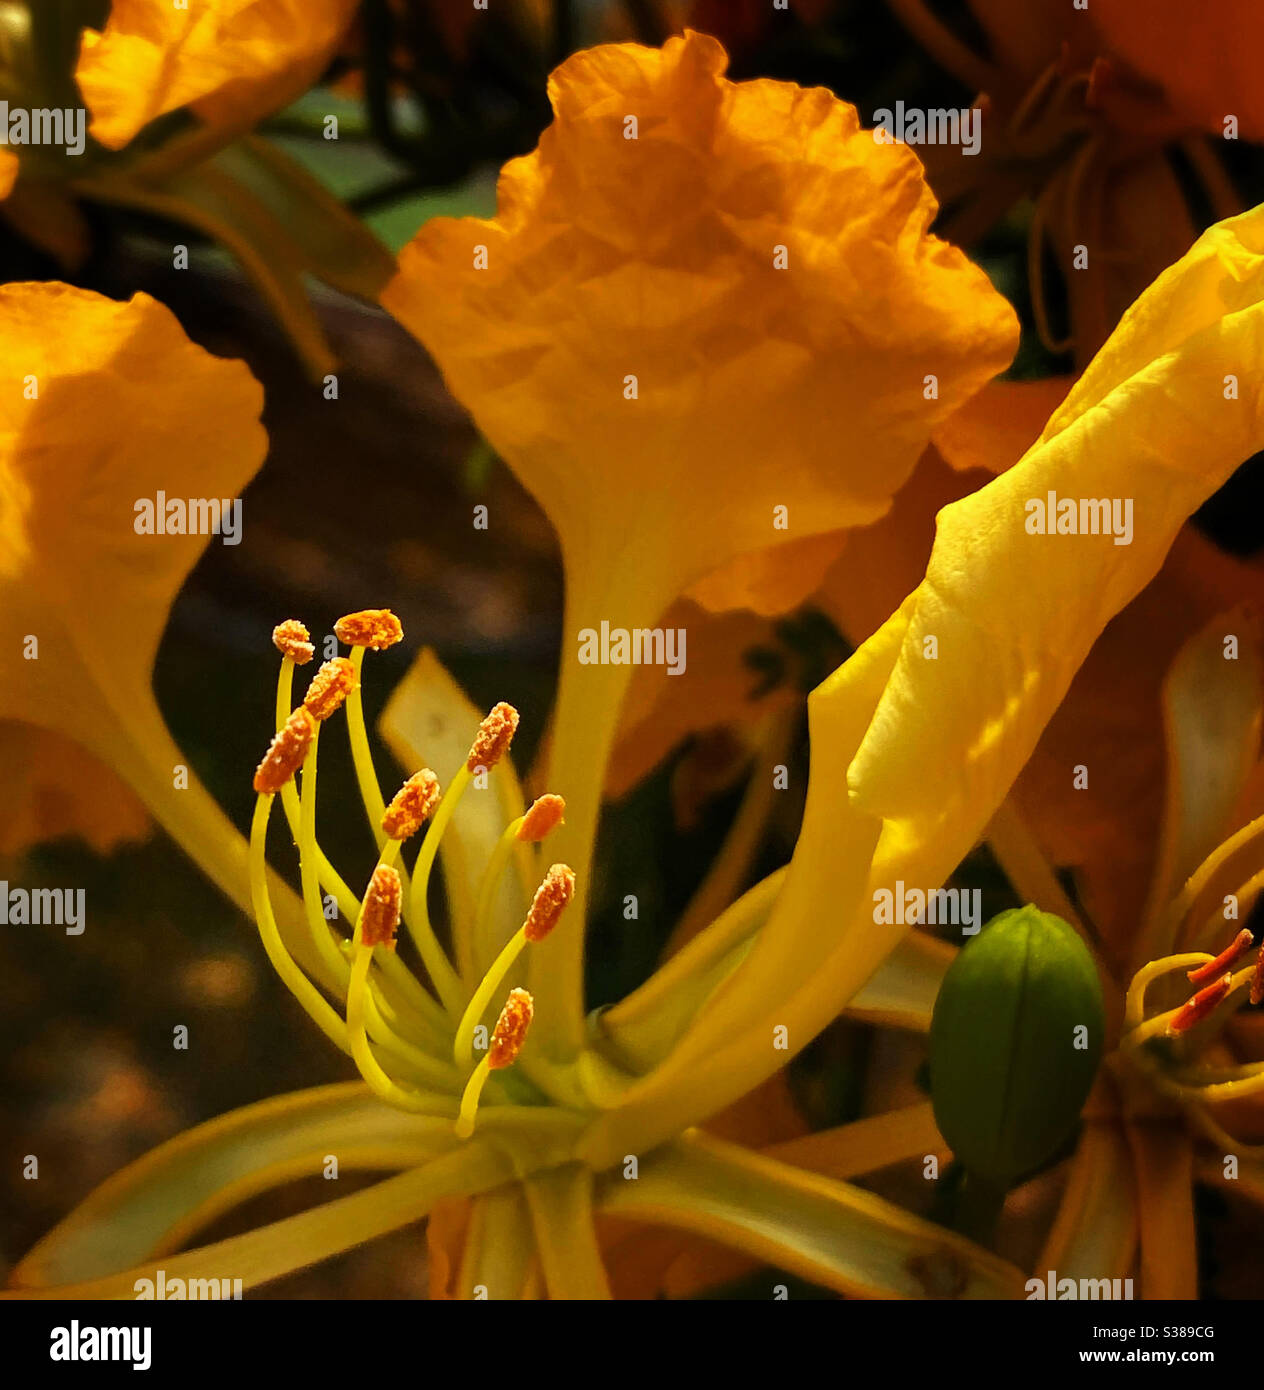 Nahaufnahme der Staubgefäße und Antheren einer gelben poinciana-Blume Stockfoto